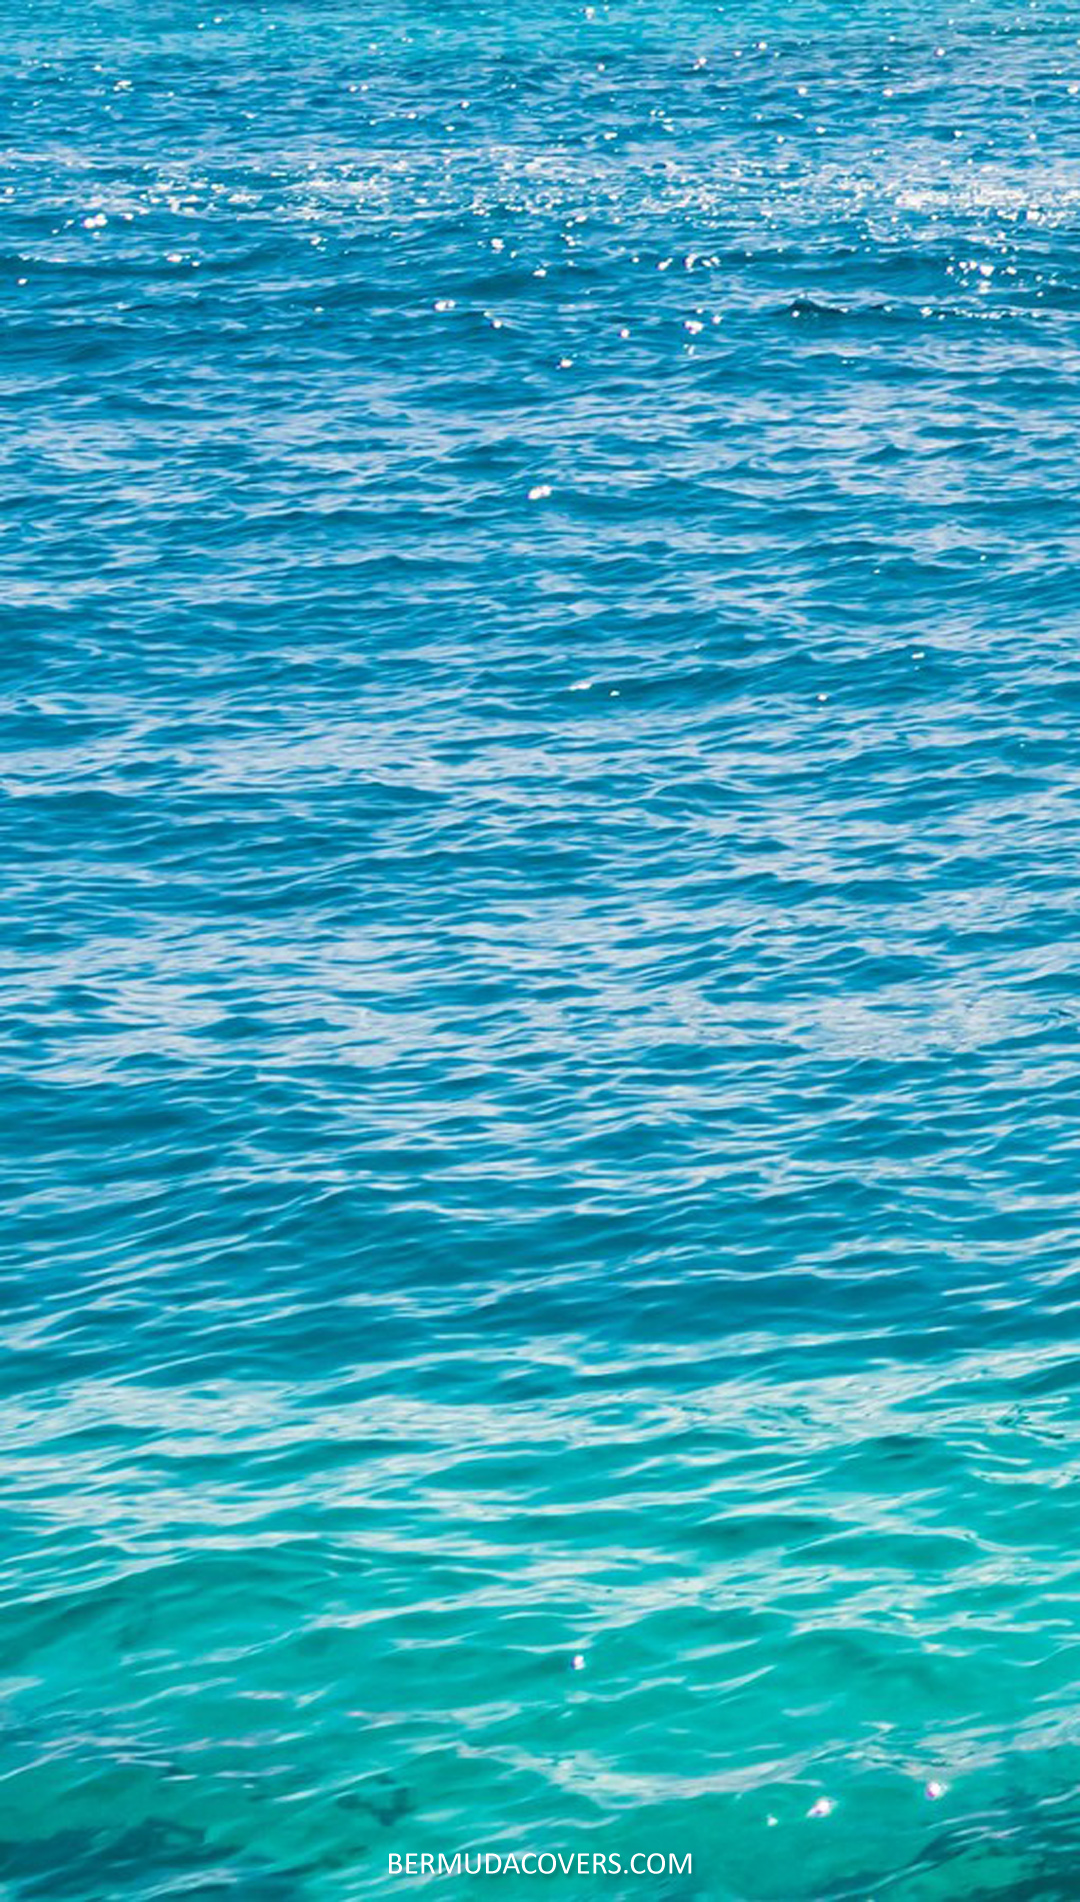 Bermuda Rippling Waters social media image 329040249 (1)